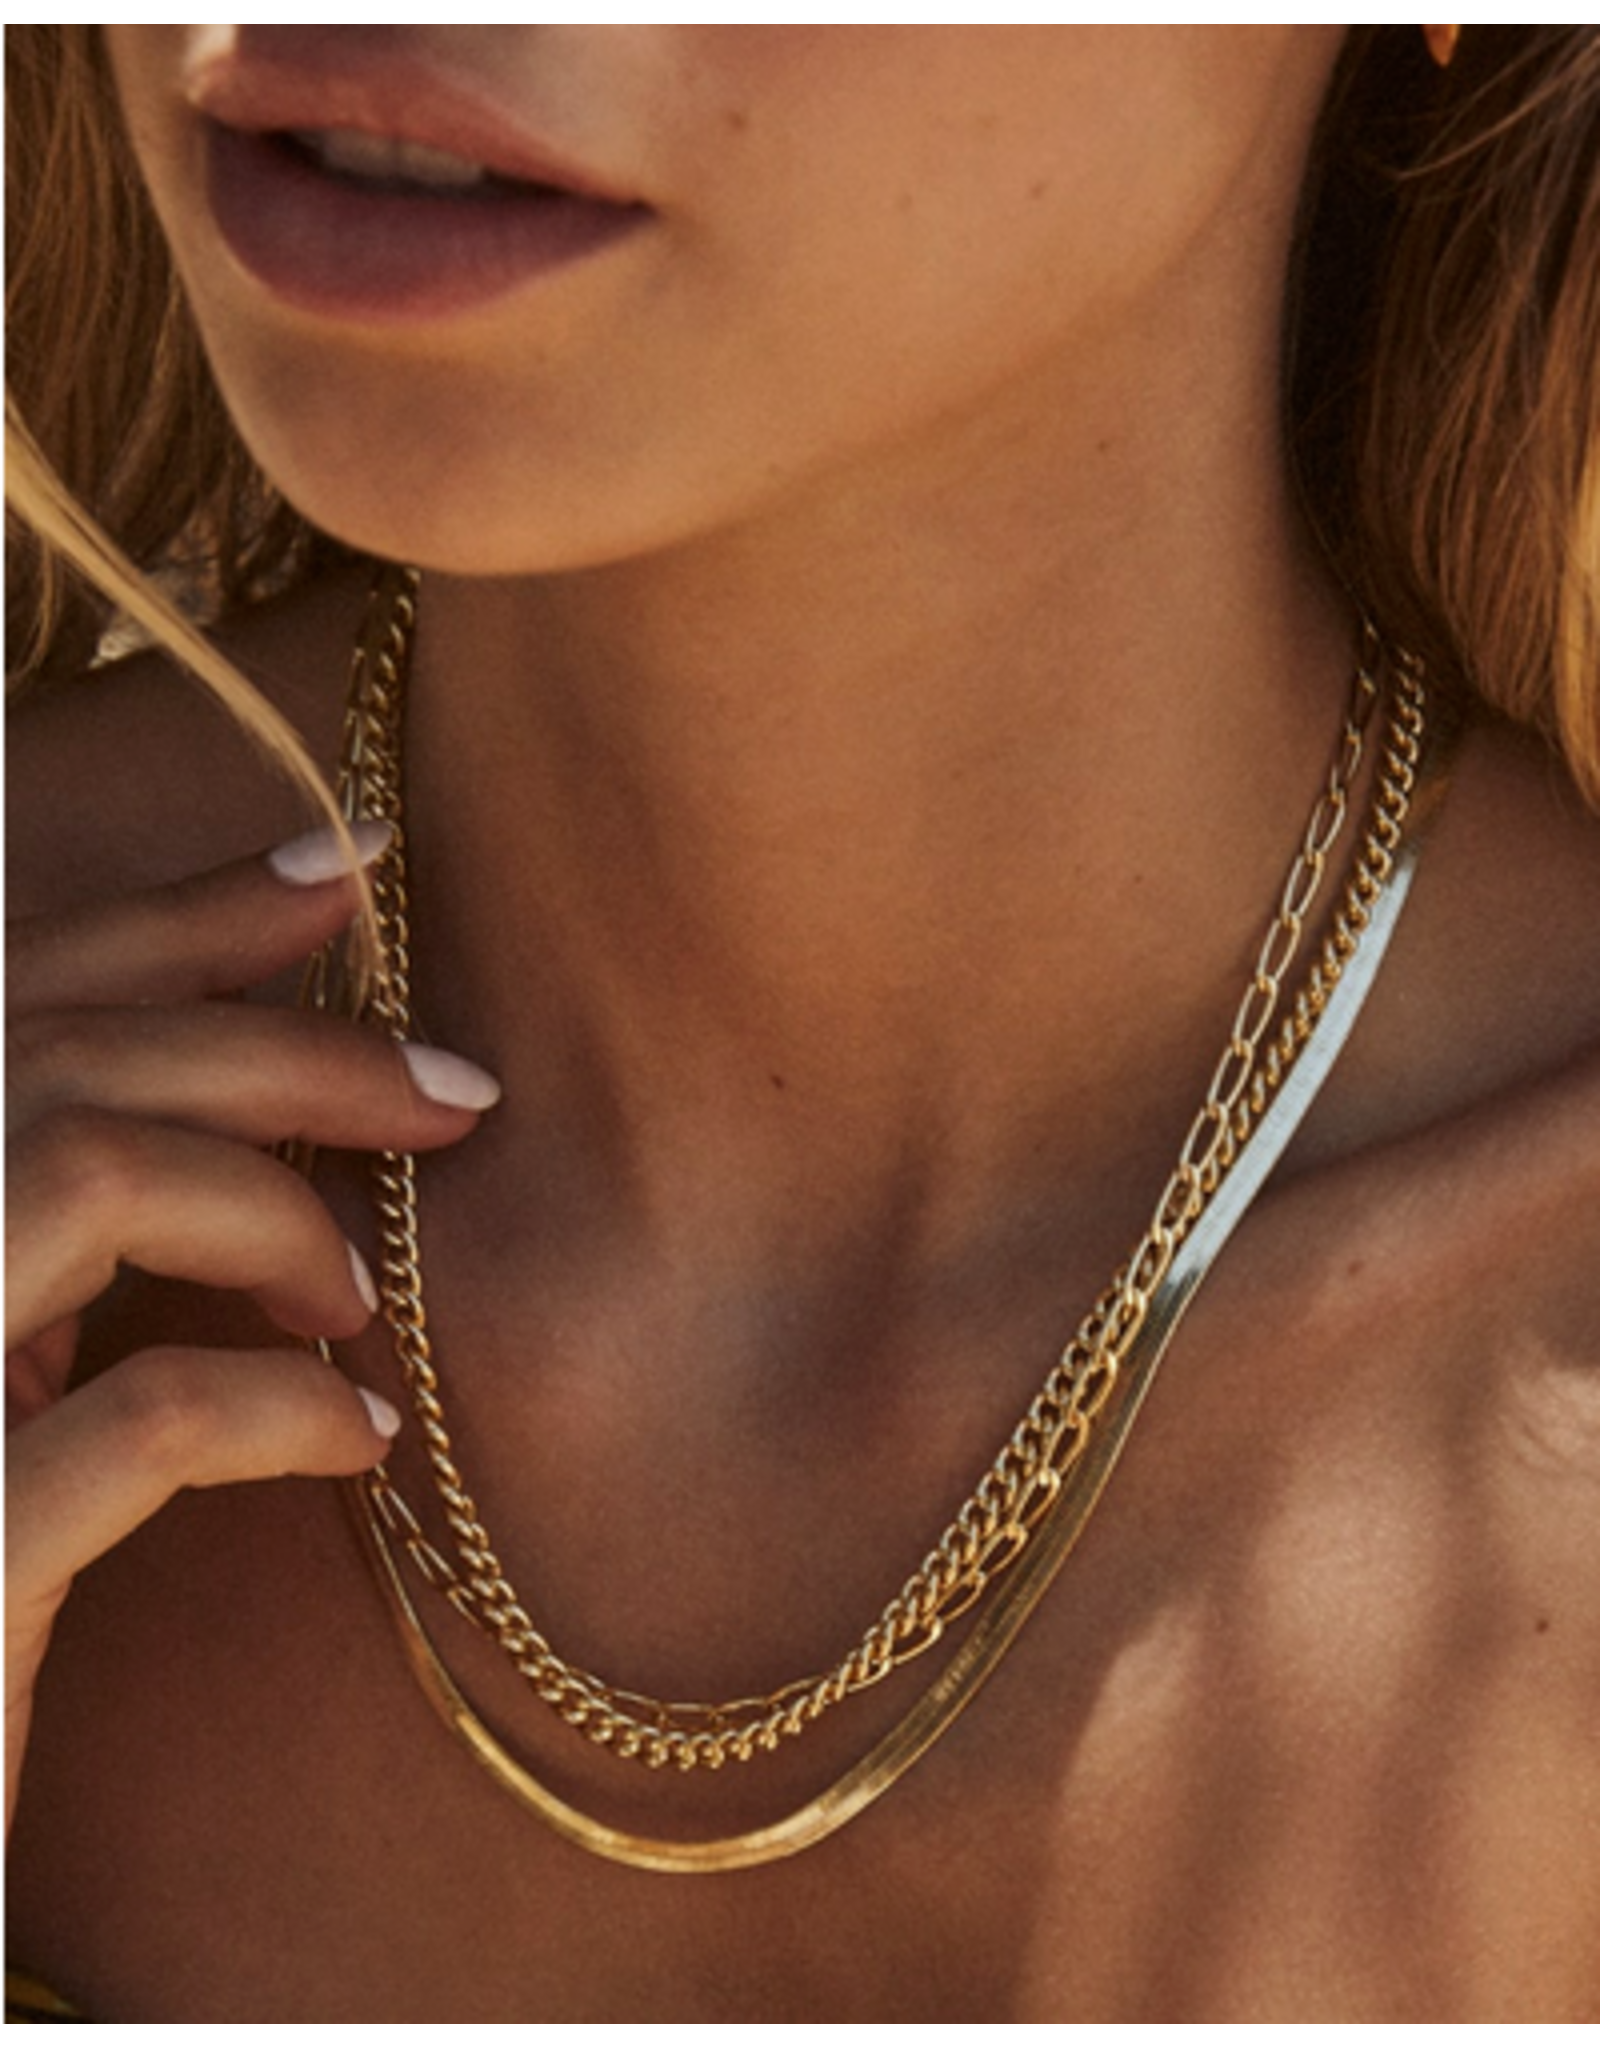 Kendra Scott Gold Kassie Chain Necklace